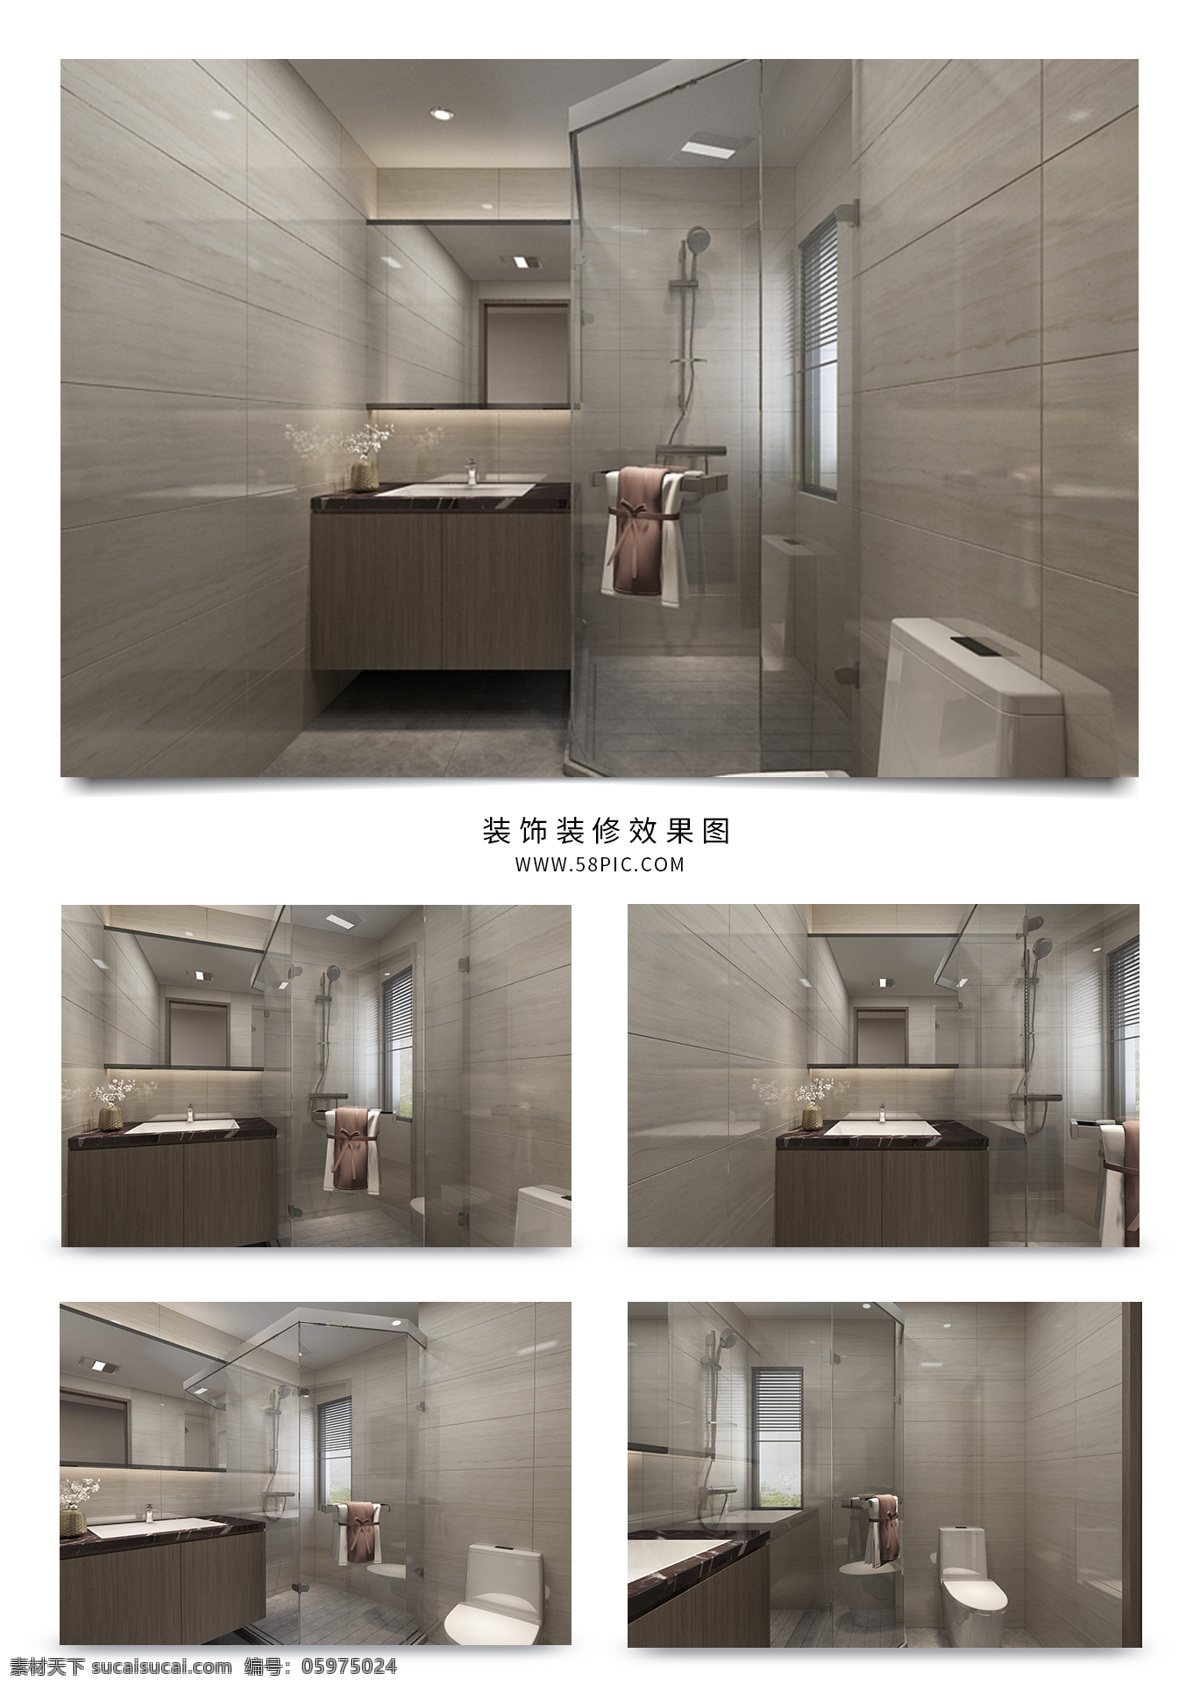 现代 风格 精美 卫生间 3d 3d模型 3d效果图 家装效果图 3d下载 3d设计 卫生间模型 卫生间效果图 模型 效果图 卫浴模型 卫浴效果图 家装模型 现代卫浴